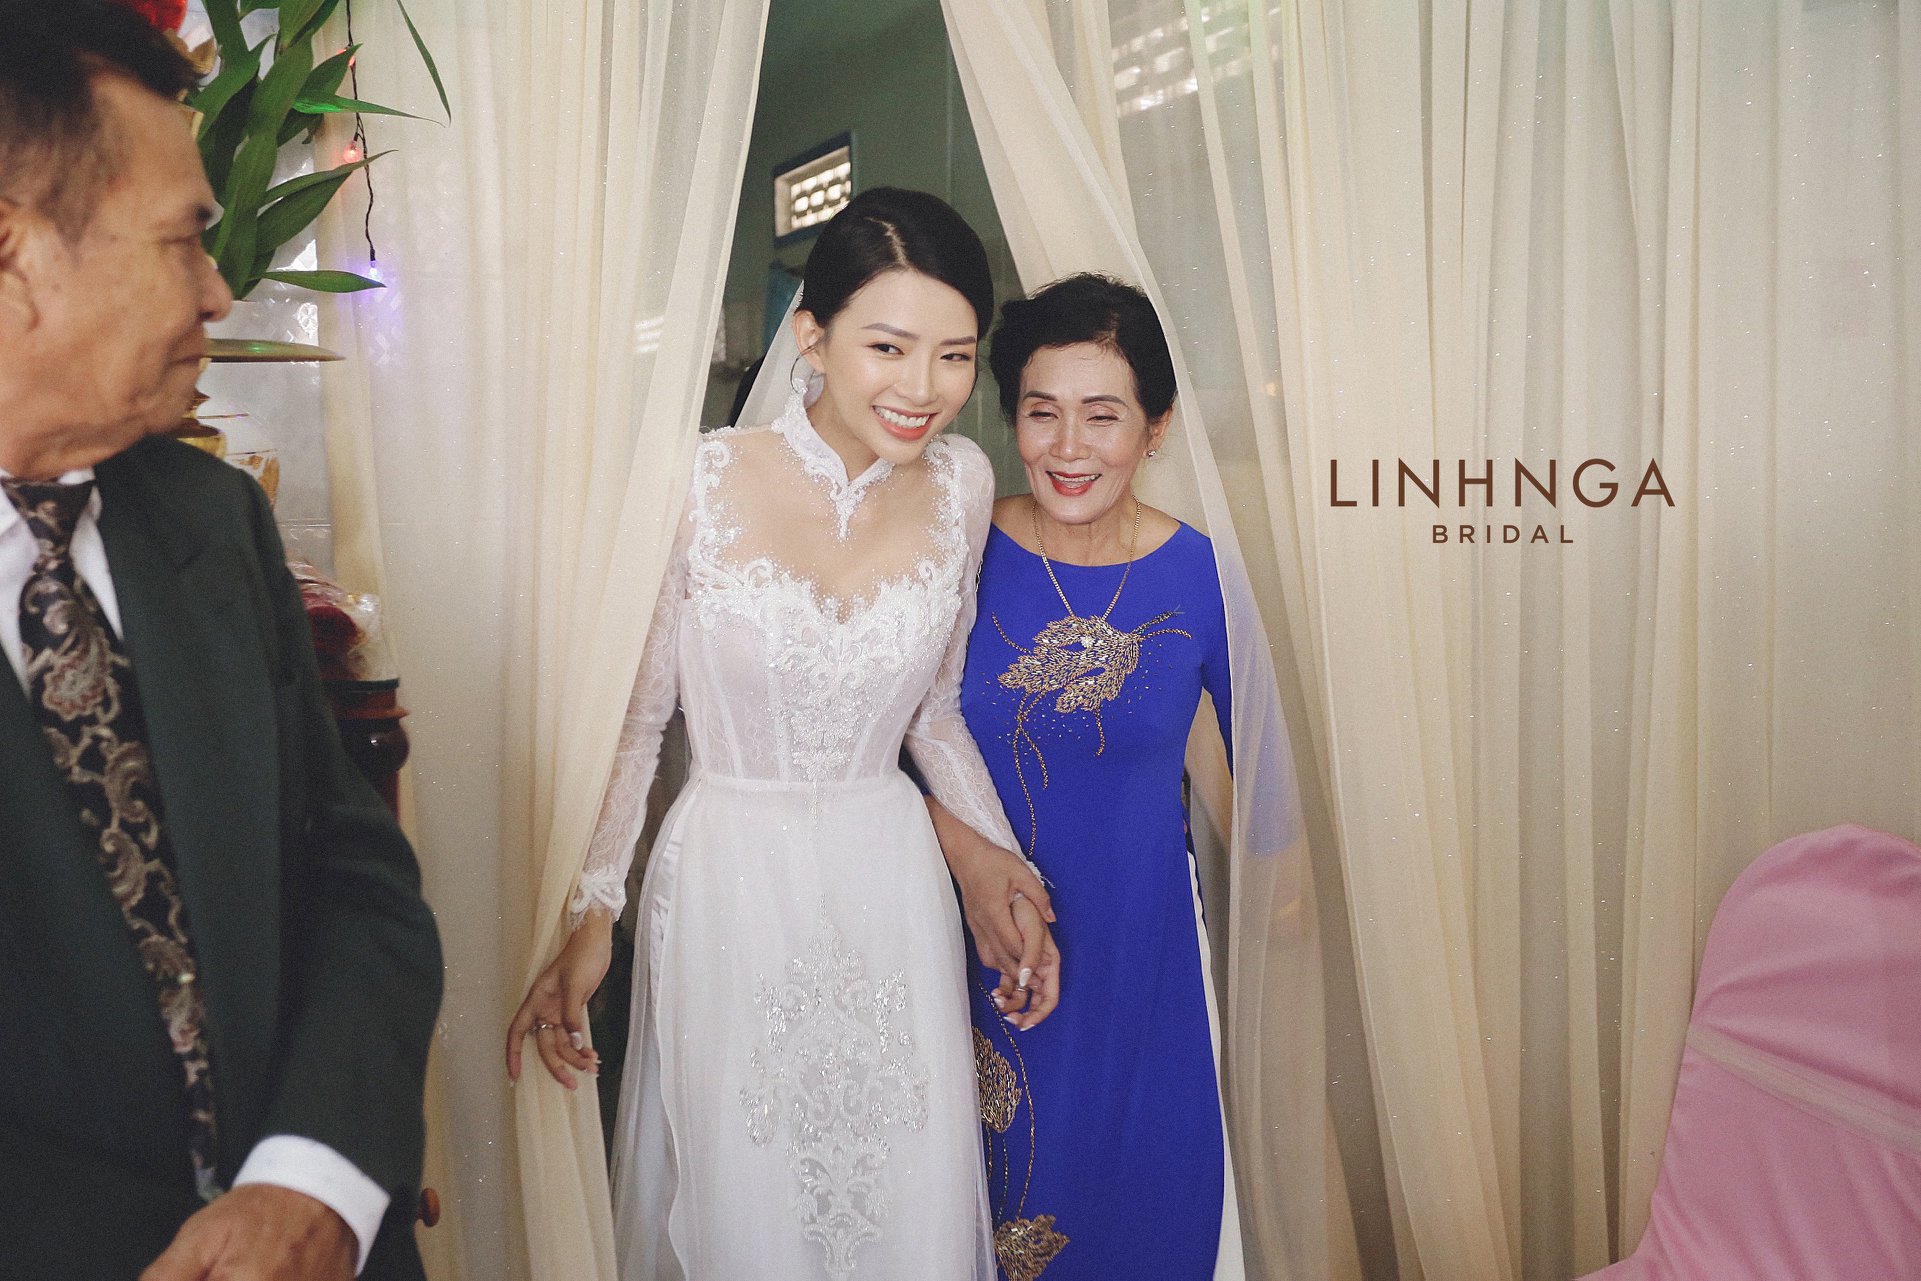 Đám cưới Phan Mạnh Quỳnh và vợ hot girl tại Nha Trang: Cô dâu khoe vòng 1 hững hờ, “cẩu lương” ngập trời trong ngày trọng đại - Ảnh 4.